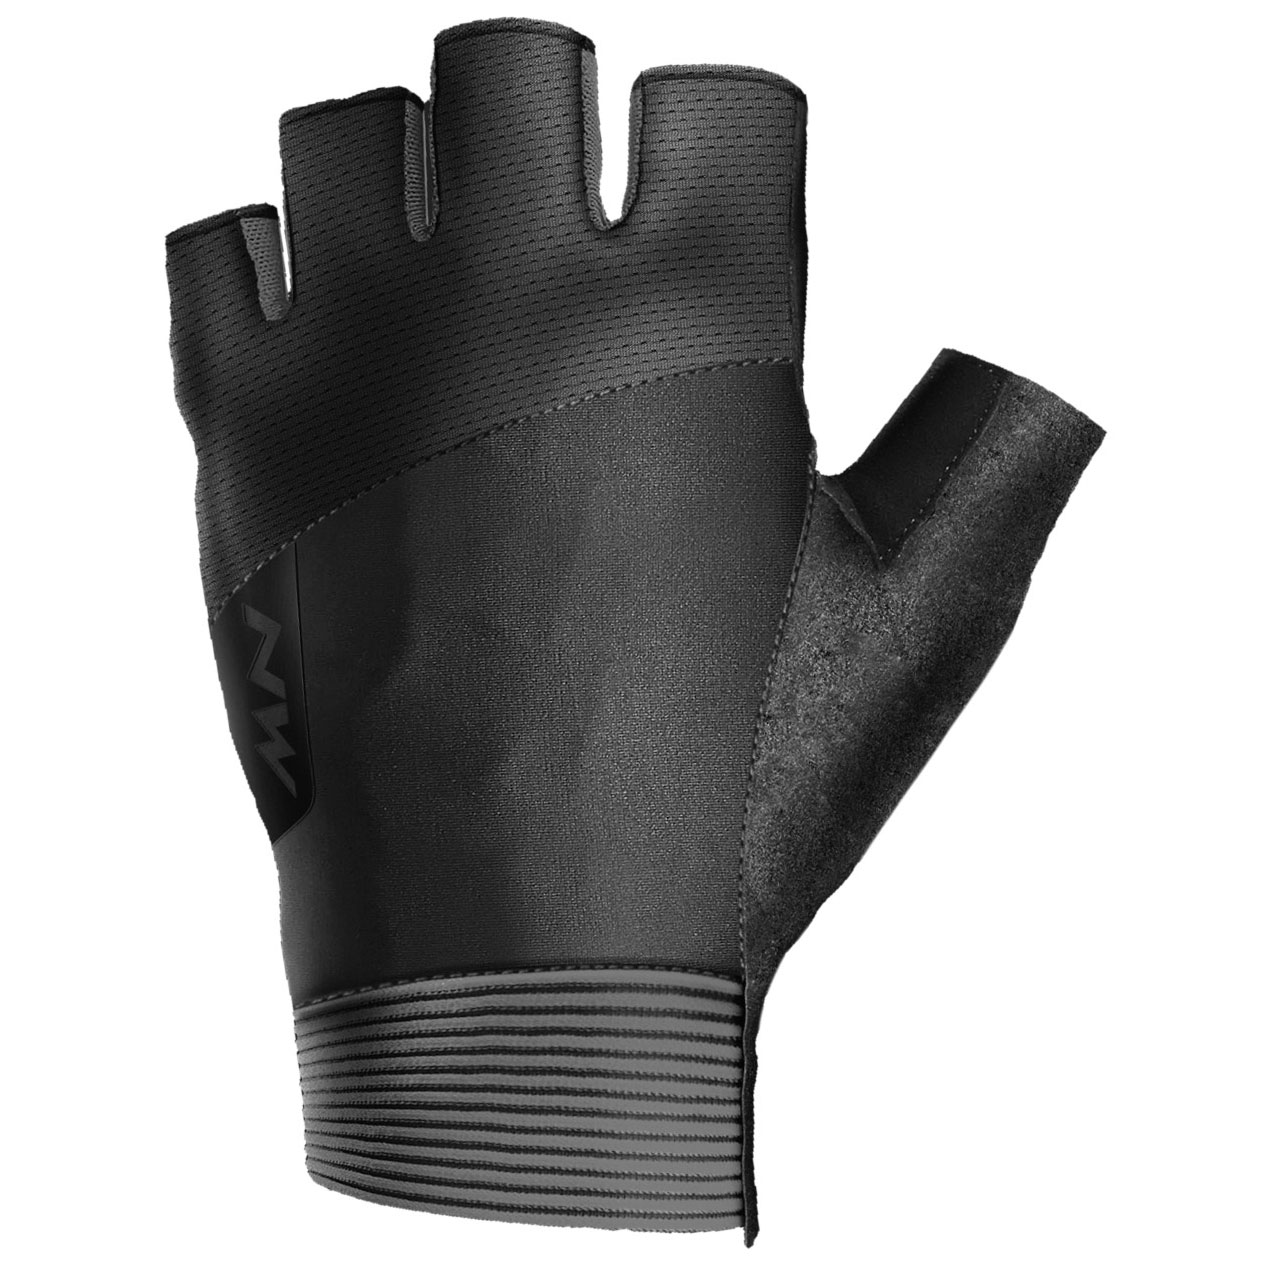 Produktbild von Northwave Extreme Kurzfinger-Handschuhe - schwarz 10